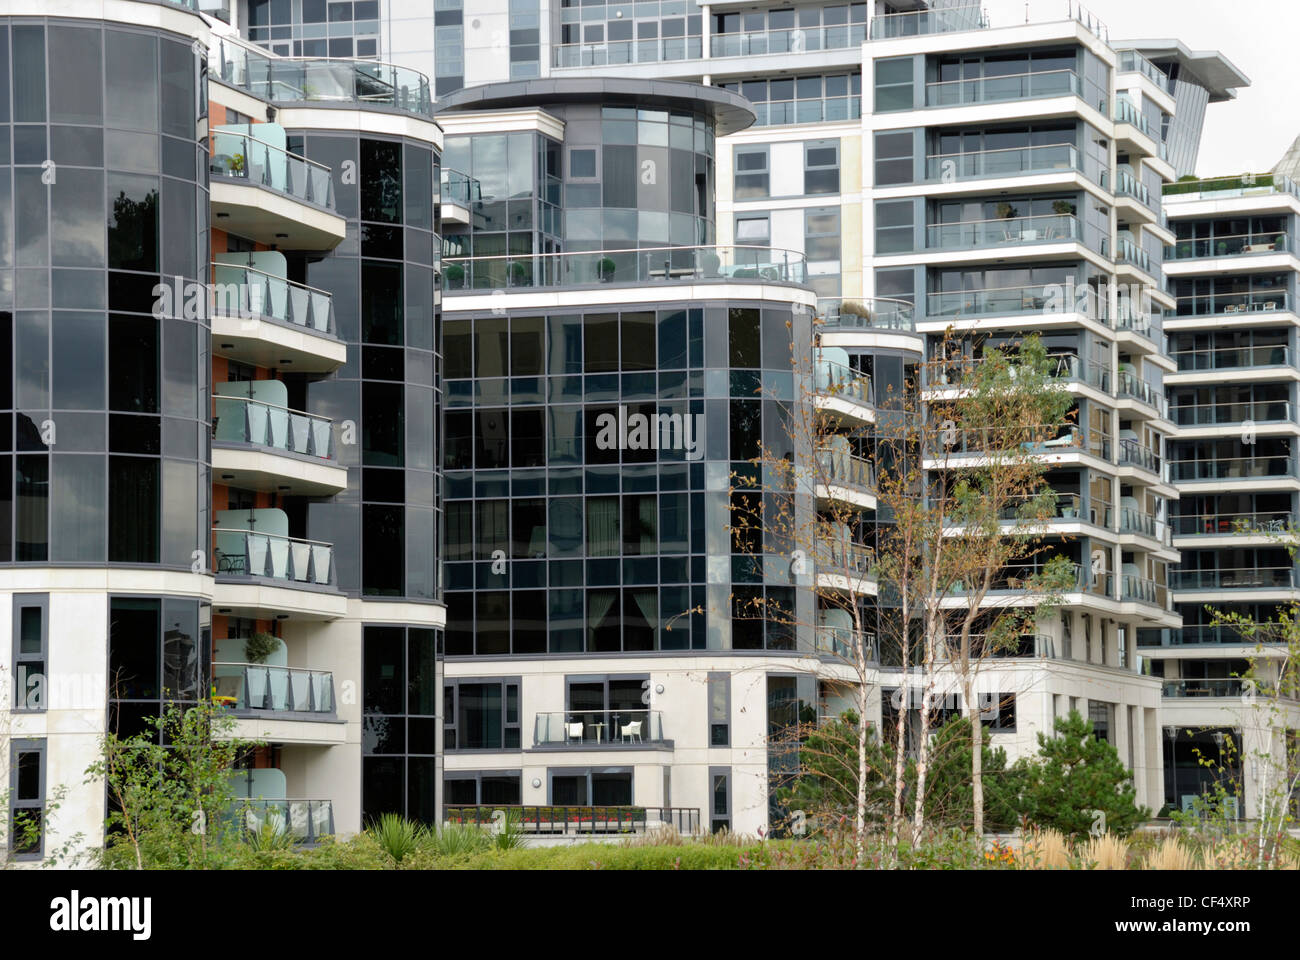 Appartamenti a Imperial Wharf, una nuova zona residenziale di sviluppo riverside a Fulham. Foto Stock